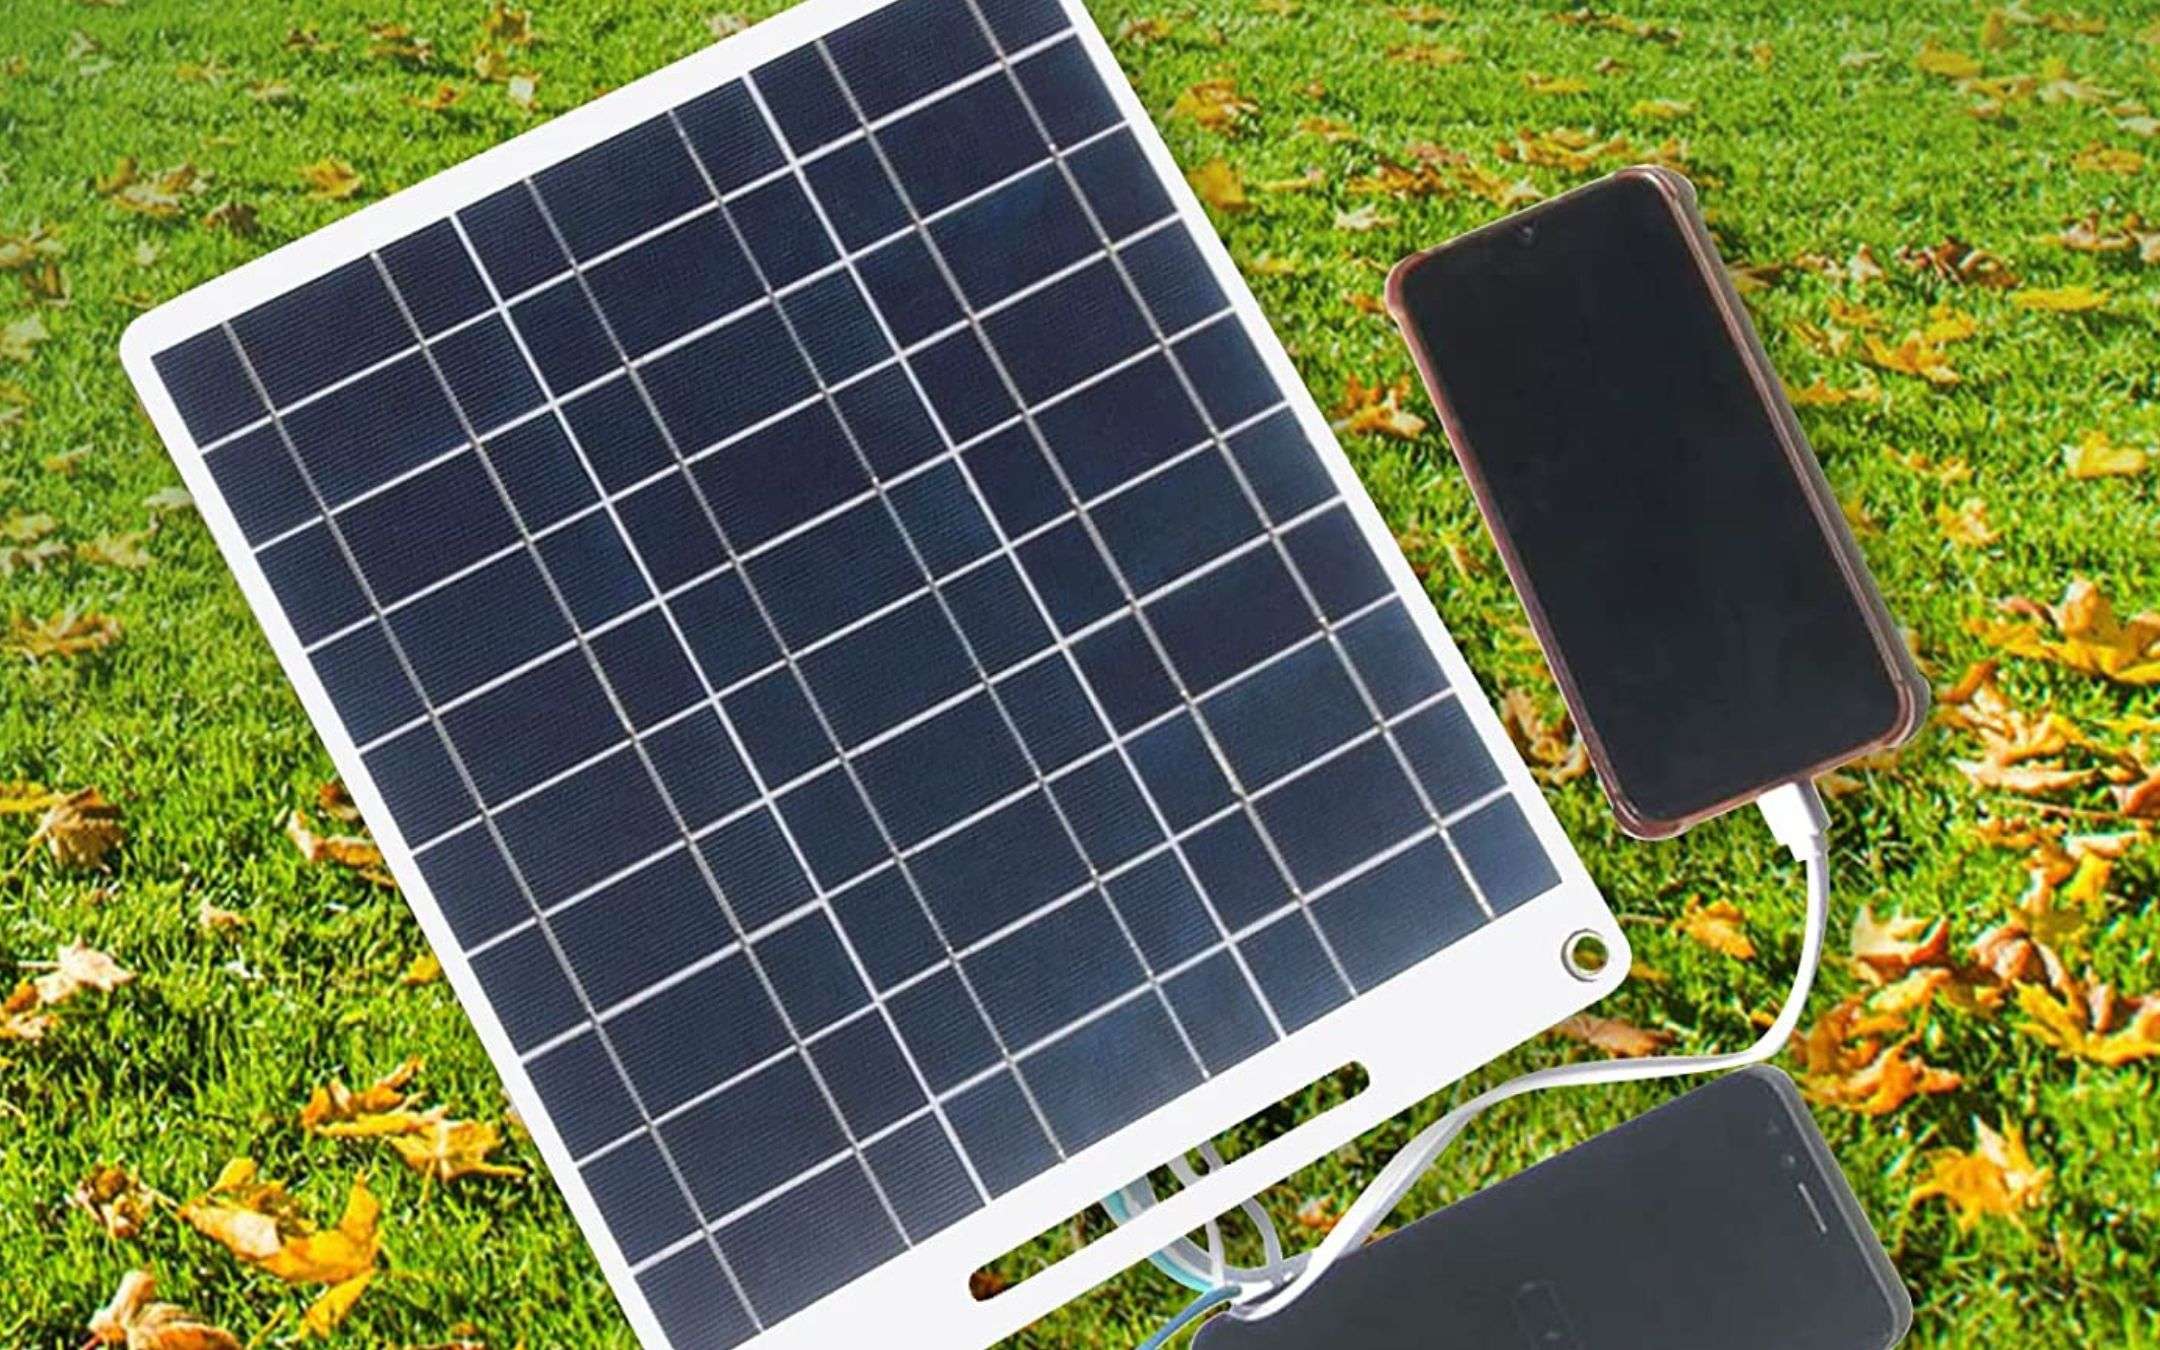 Pannello solare con 2 porte USB: ricarica smartphone e non solo, GENIALATA  (26€)